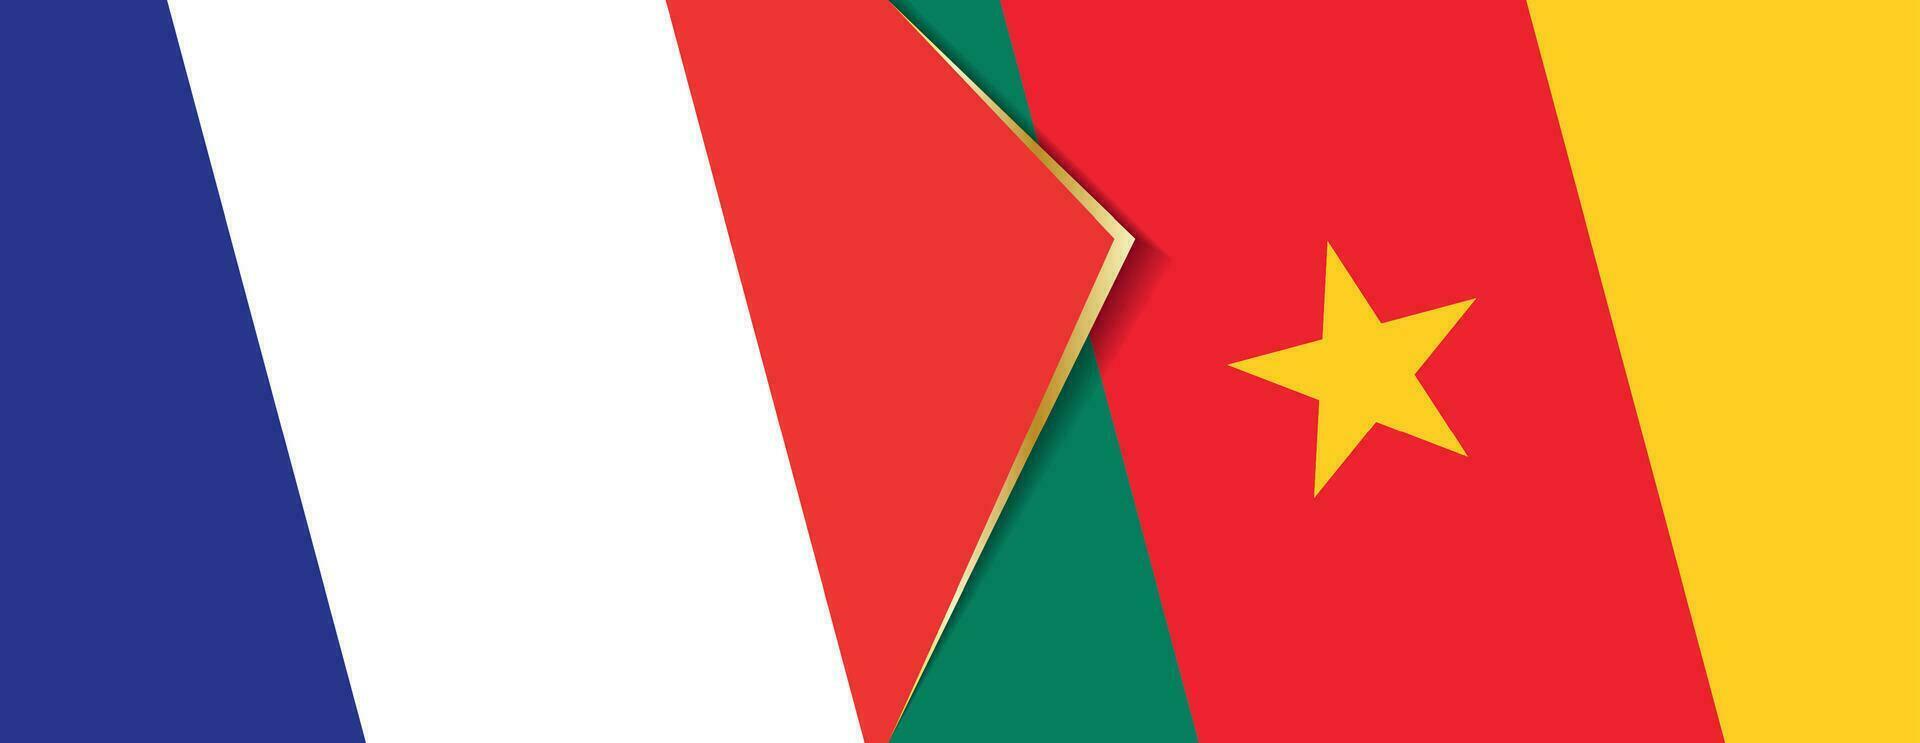 Frankreich und Kamerun Flaggen, zwei Vektor Flaggen.